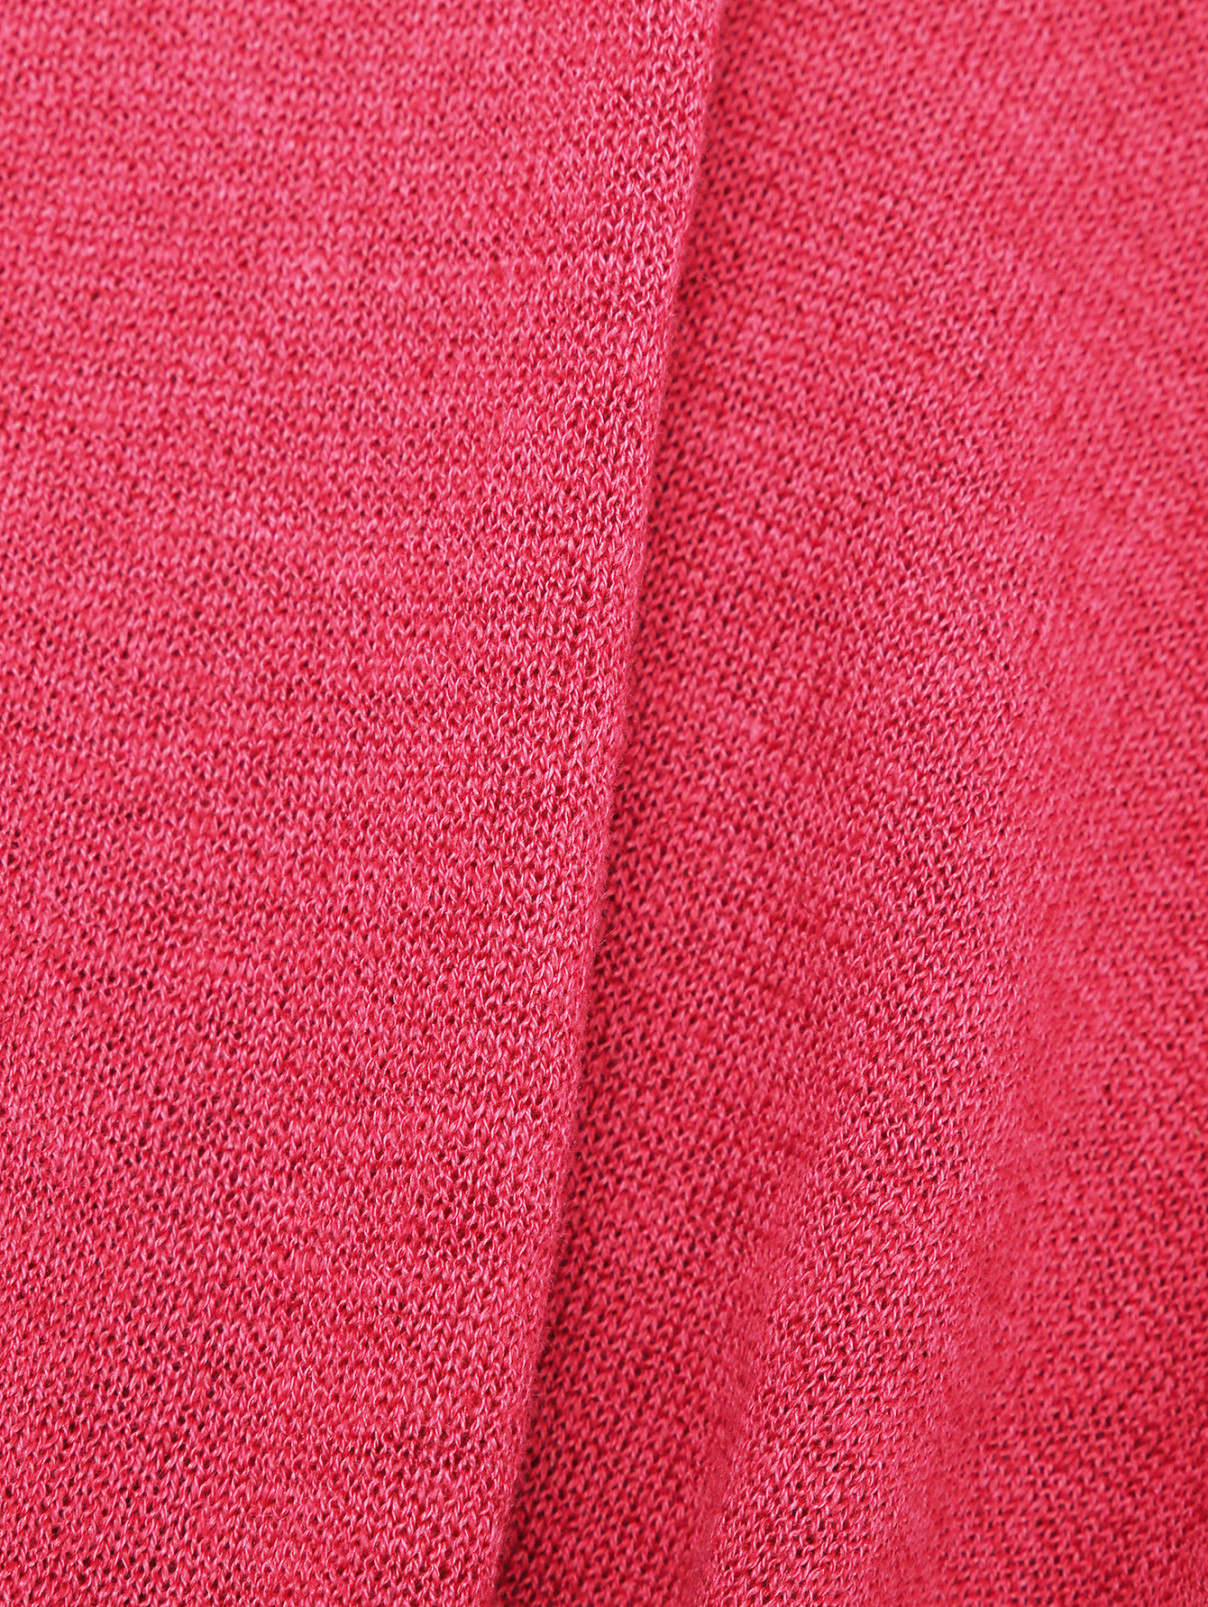 Однотонная футболка из льняного волокна Persona by Marina Rinaldi  –  Деталь1  – Цвет:  Красный